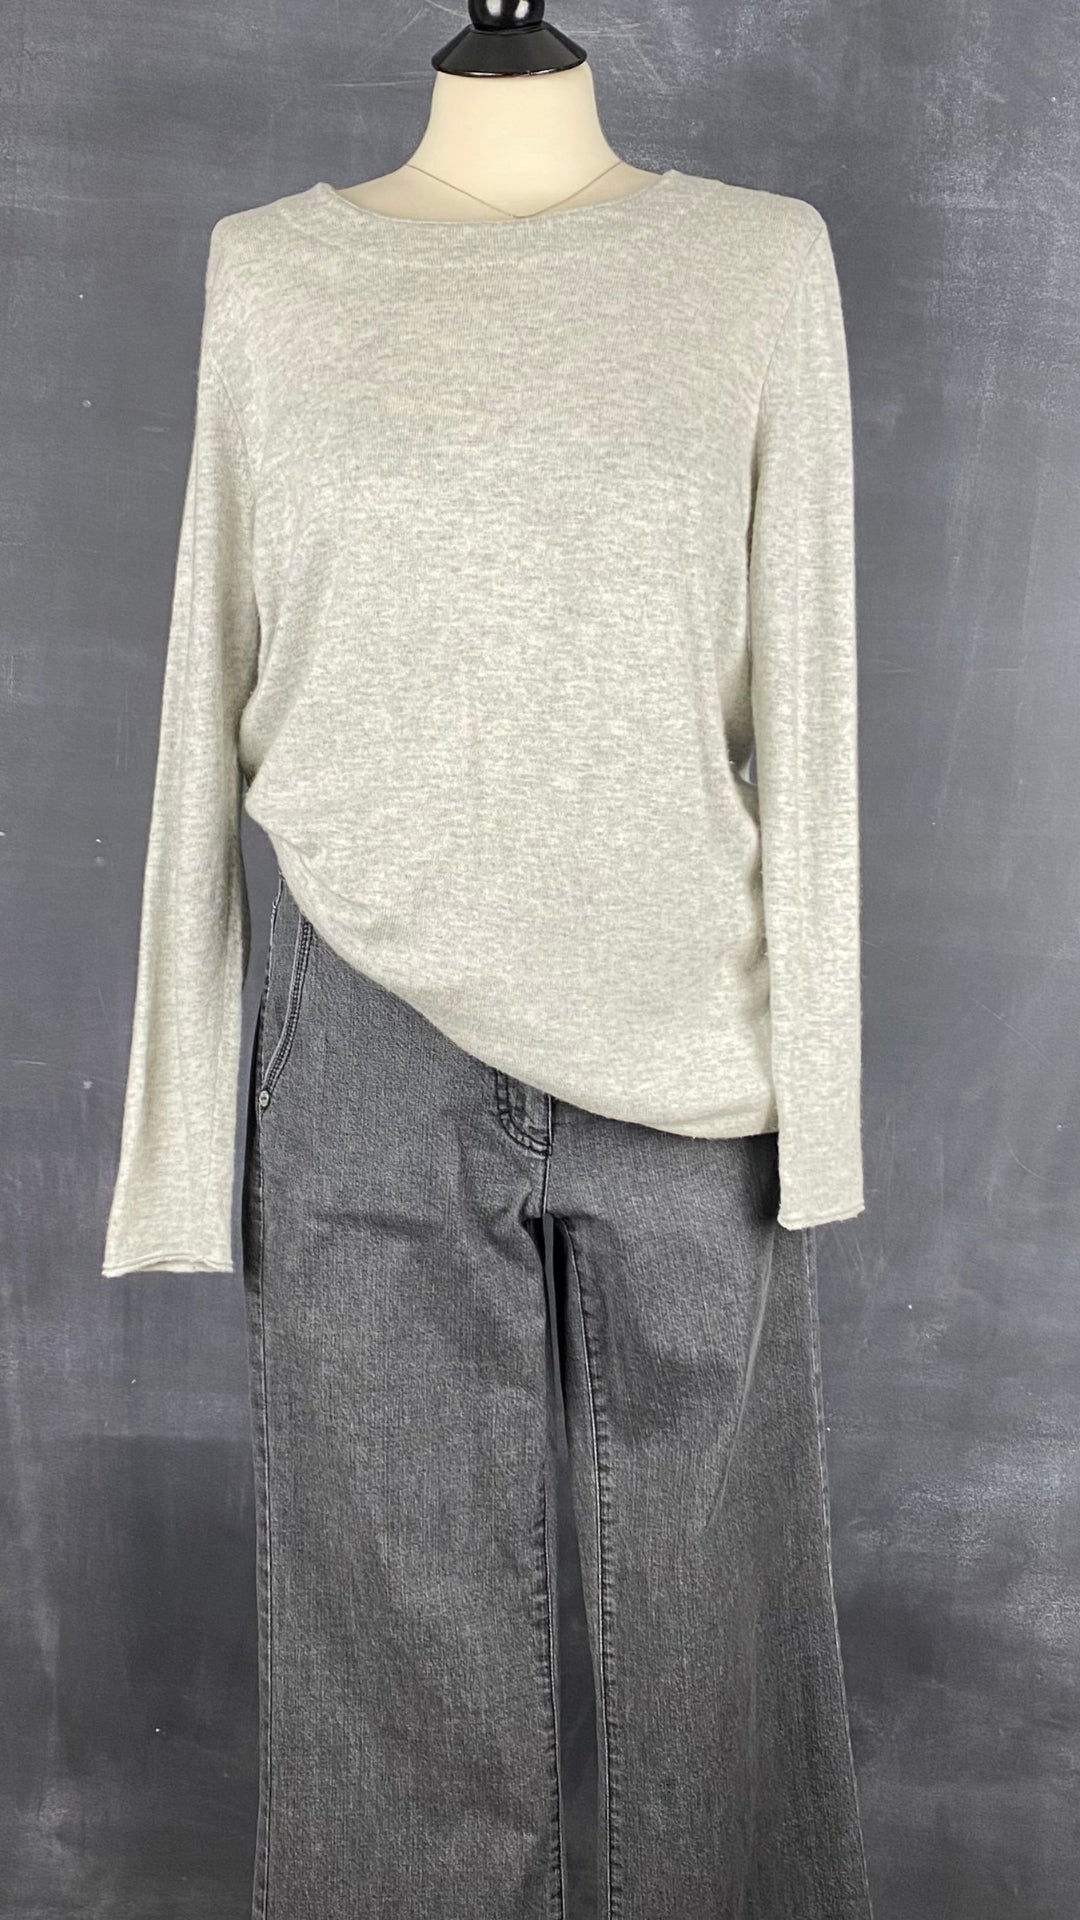 Chandail long en tricot doux gris beige Oui, taille 10 (environ medium). Vue de l'agencement avec le jeans gris délavé Luisa Cerano.